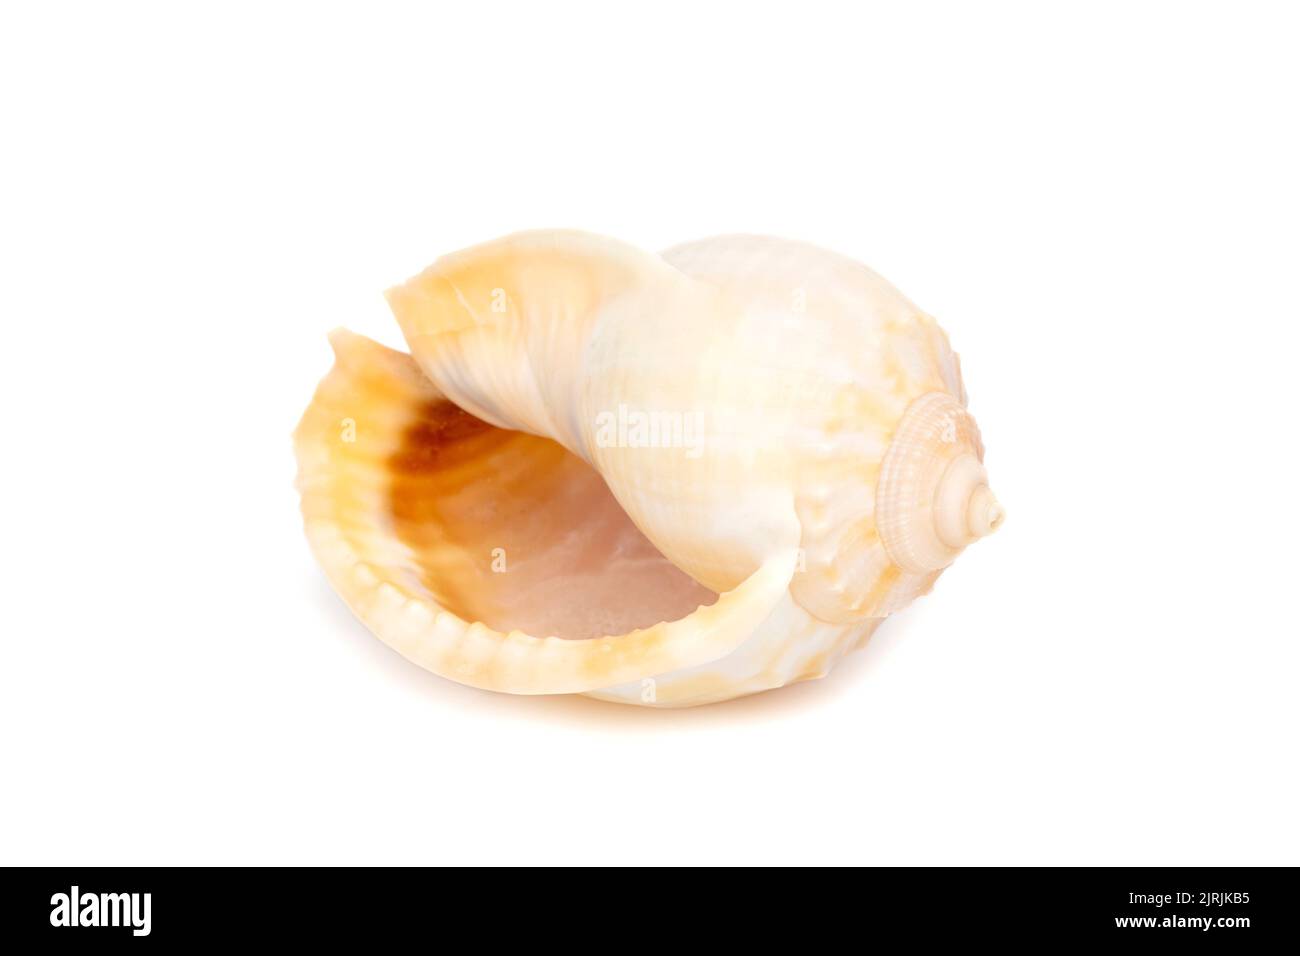 Immagine delle conchiglie del cofano grigio (Phalium glaucum) su sfondo bianco. Animali sottomarini. Conchiglie marine. Foto Stock